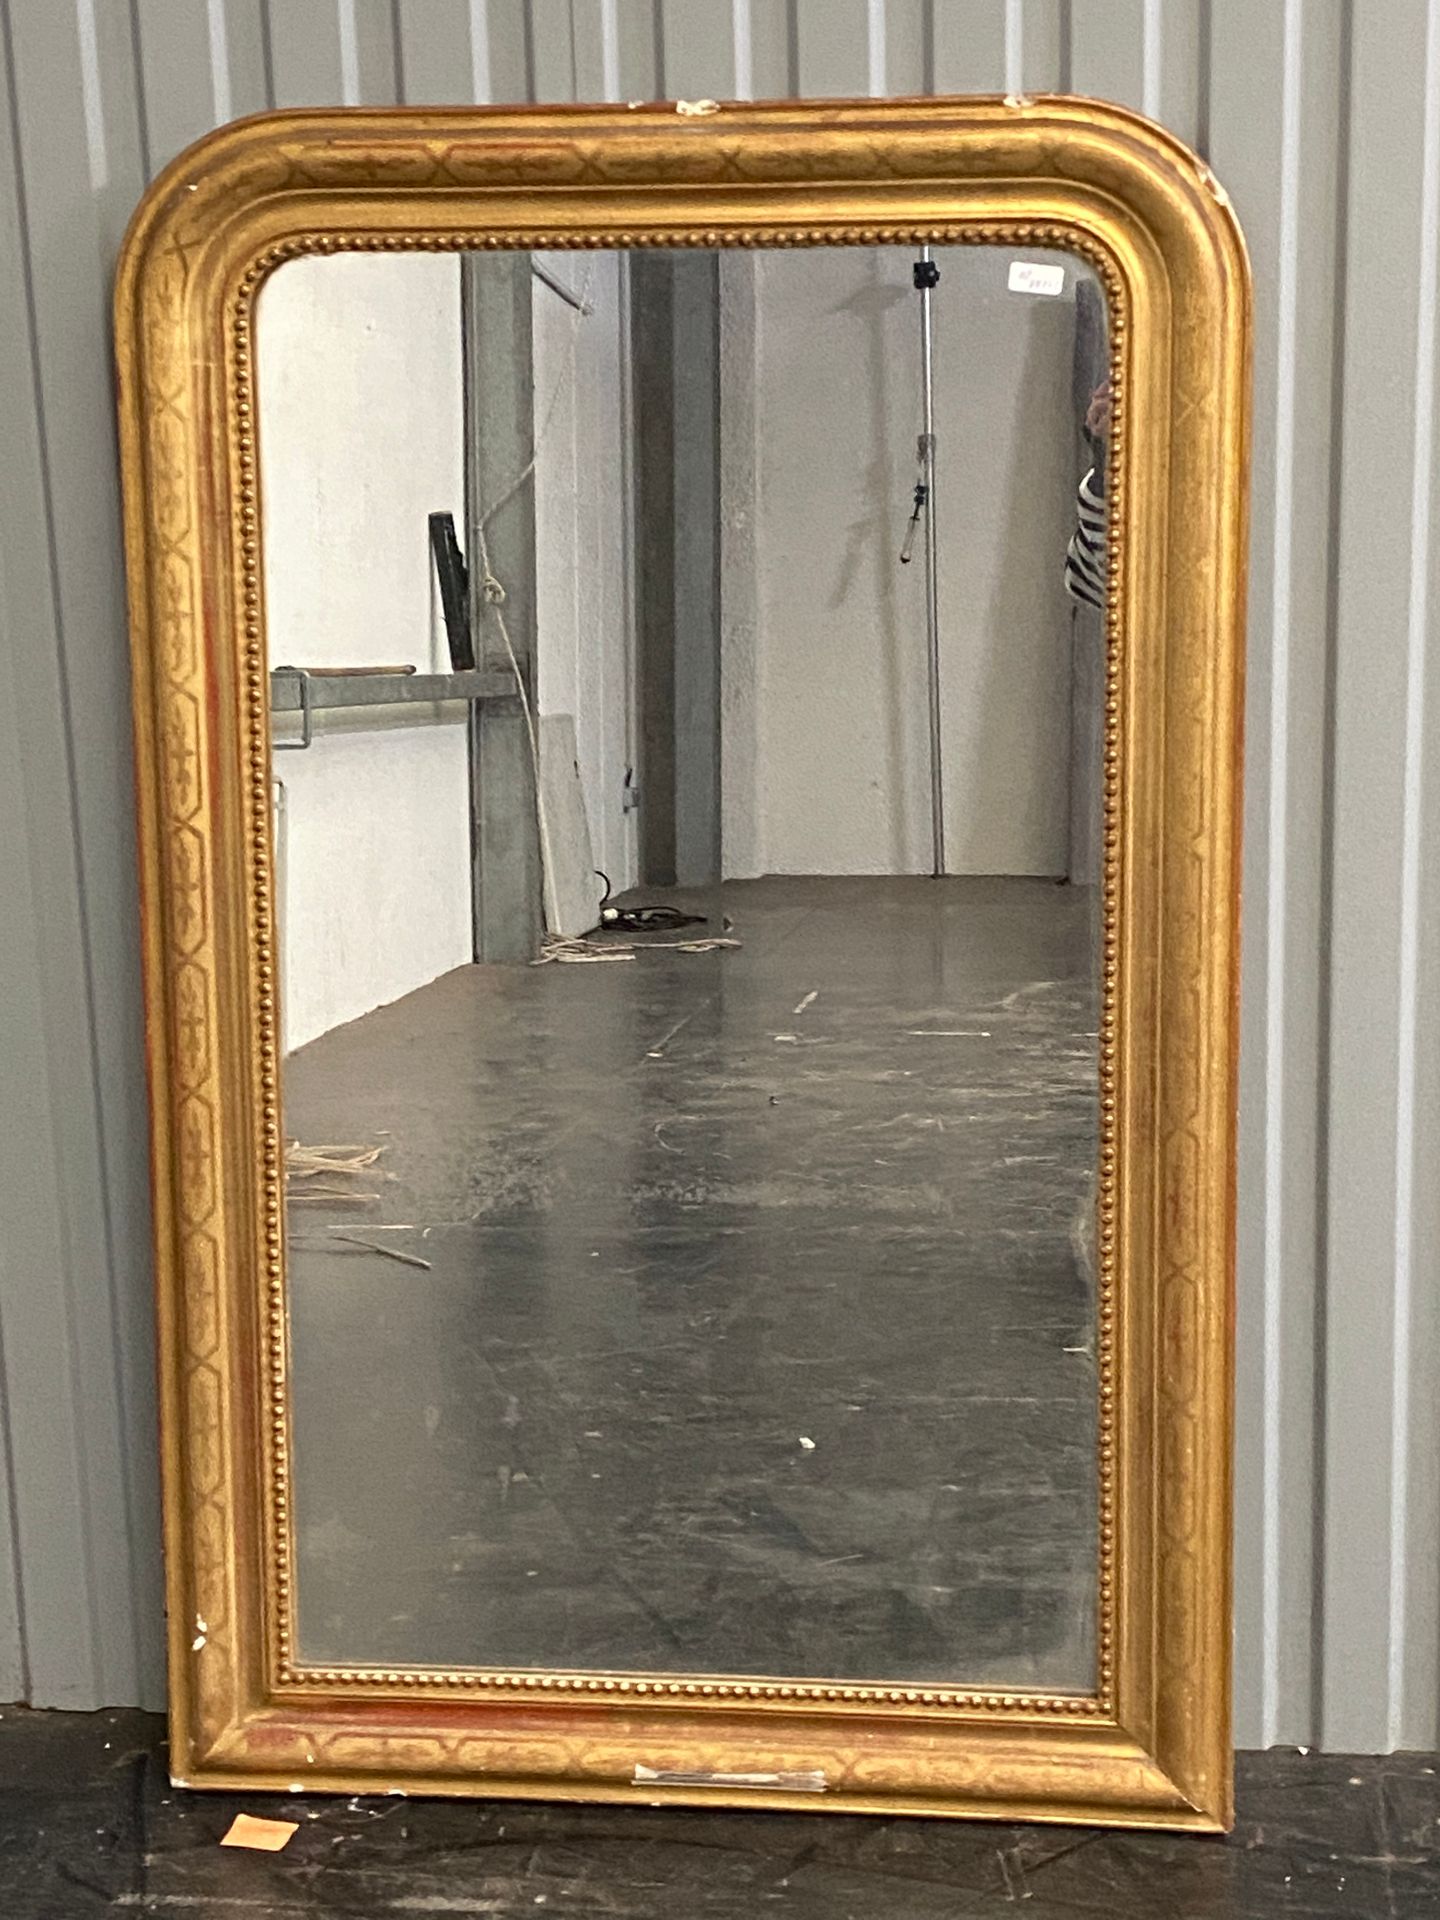 Null Kaminspiegel mit vergoldetem Rahmen.

Epoche Louis Philippe

134 x 85 cm